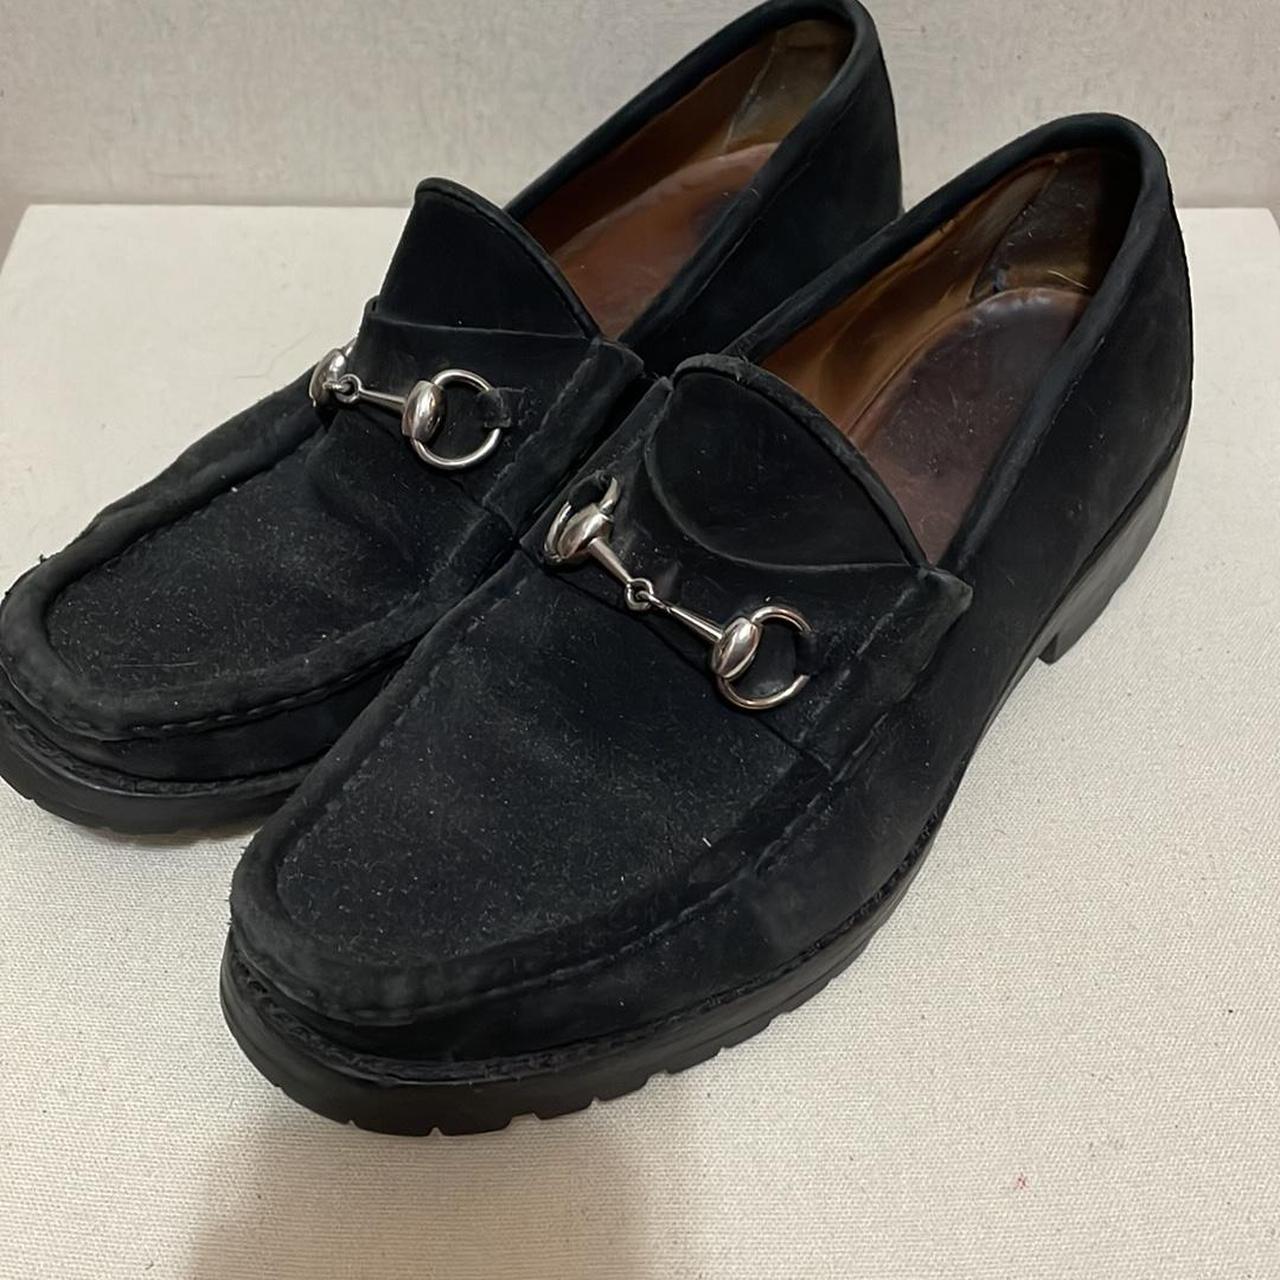 Vintage black suede Gucci loafers men’s 9 made in... - Depop